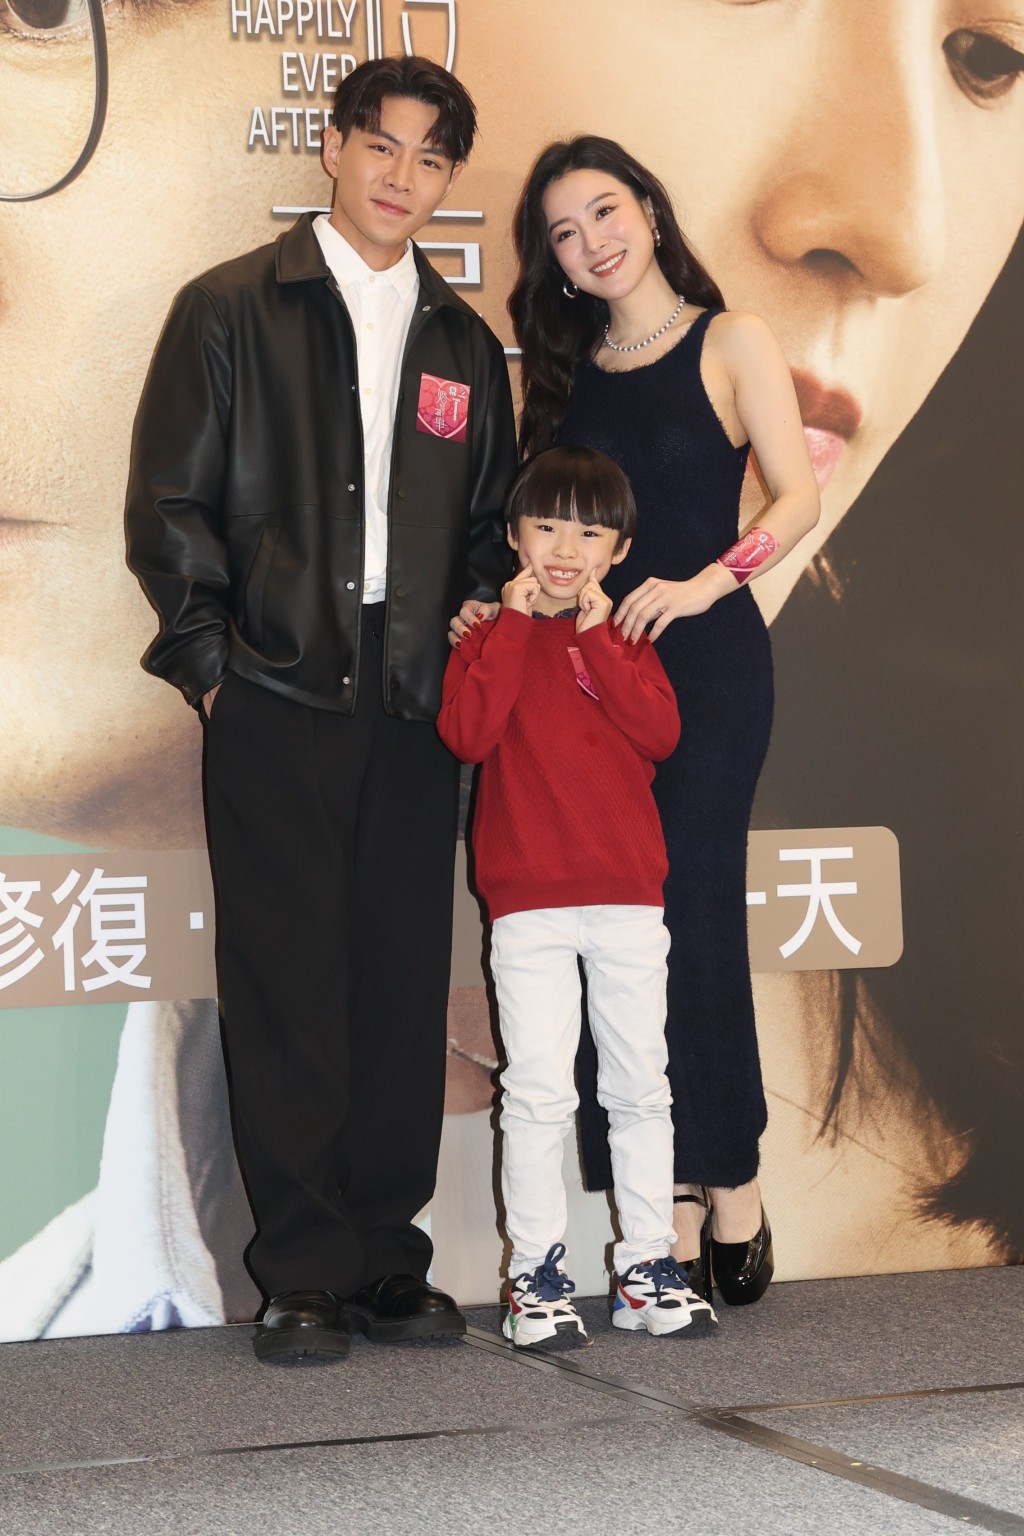  王敏奕在《婚后事》与罗天宇组织家庭。